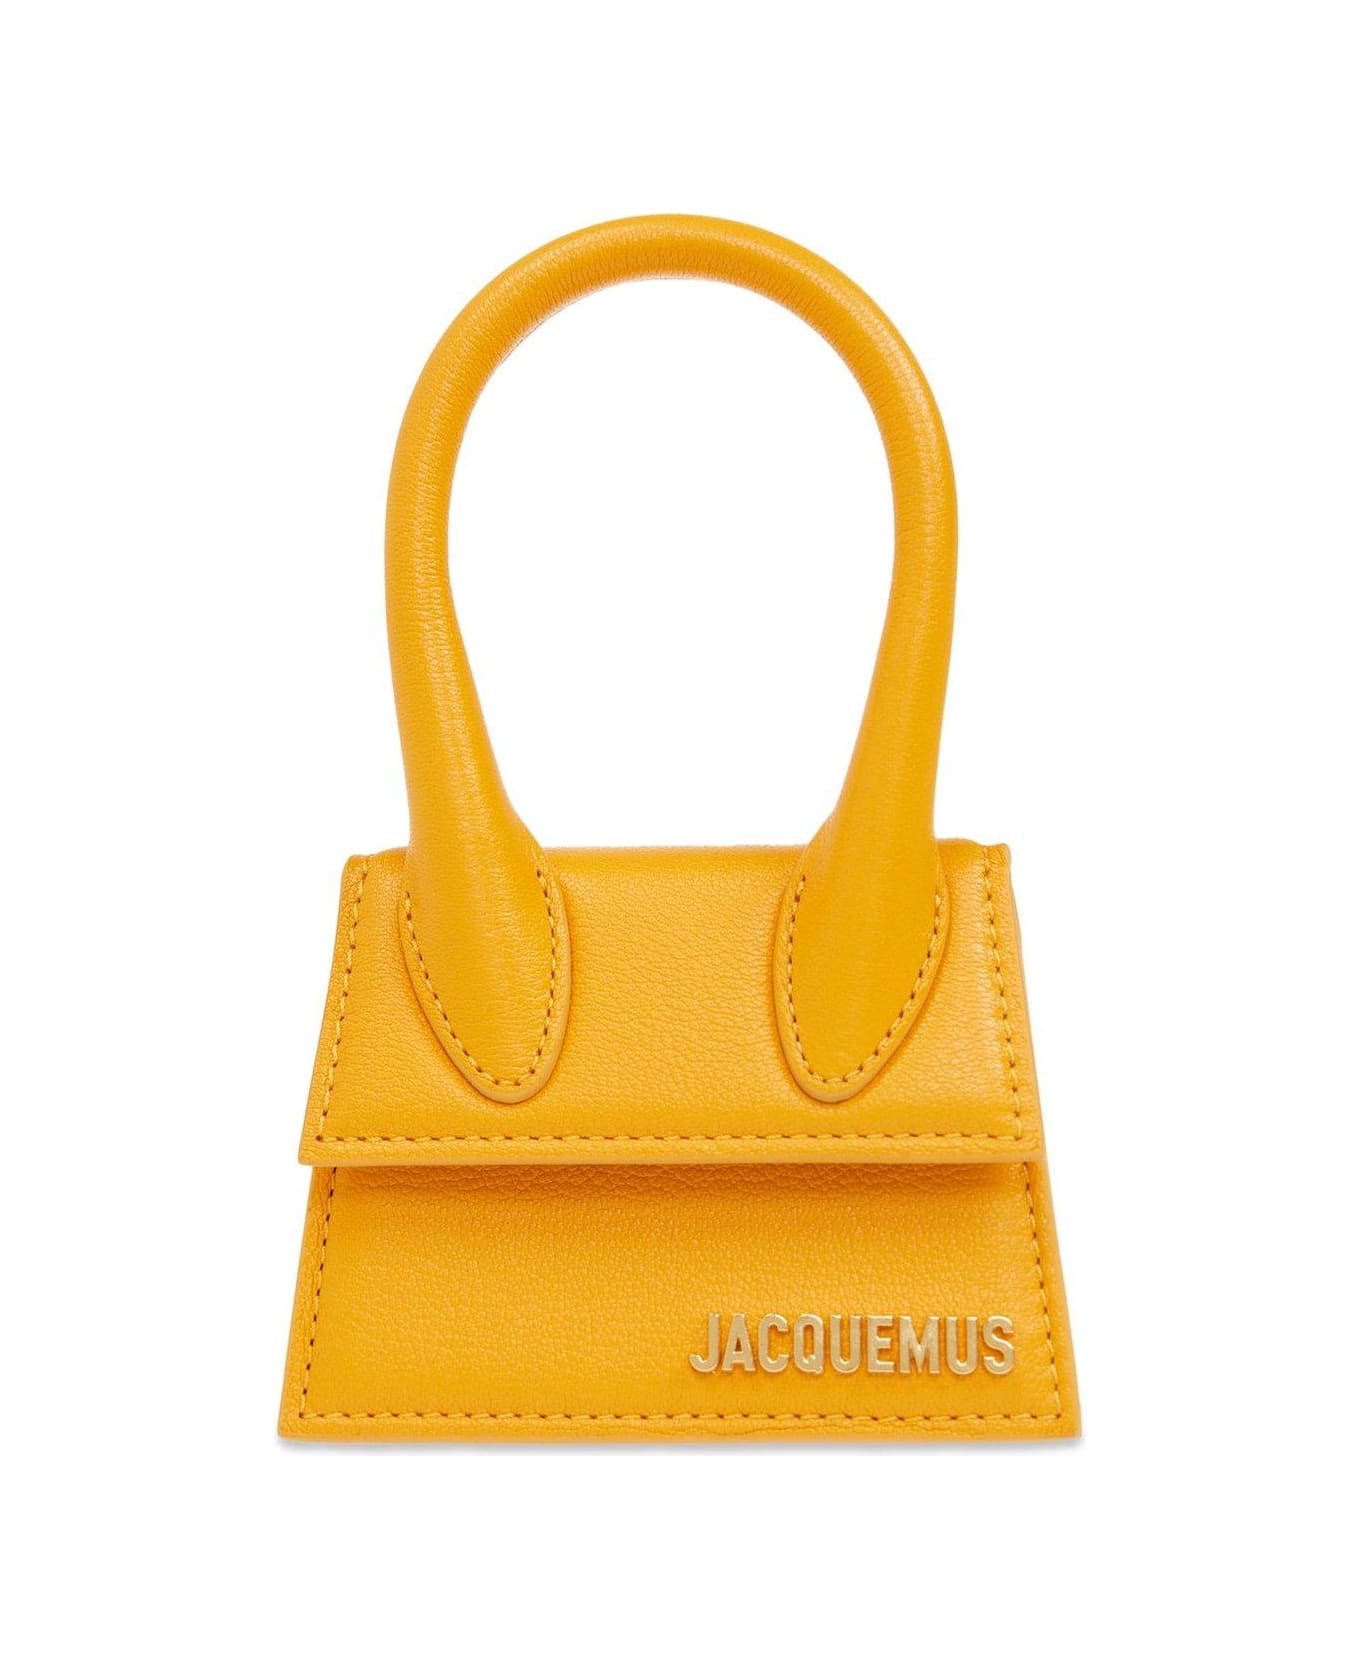 Jacquemus Le Chiquito Signature Handbag - ORANGE